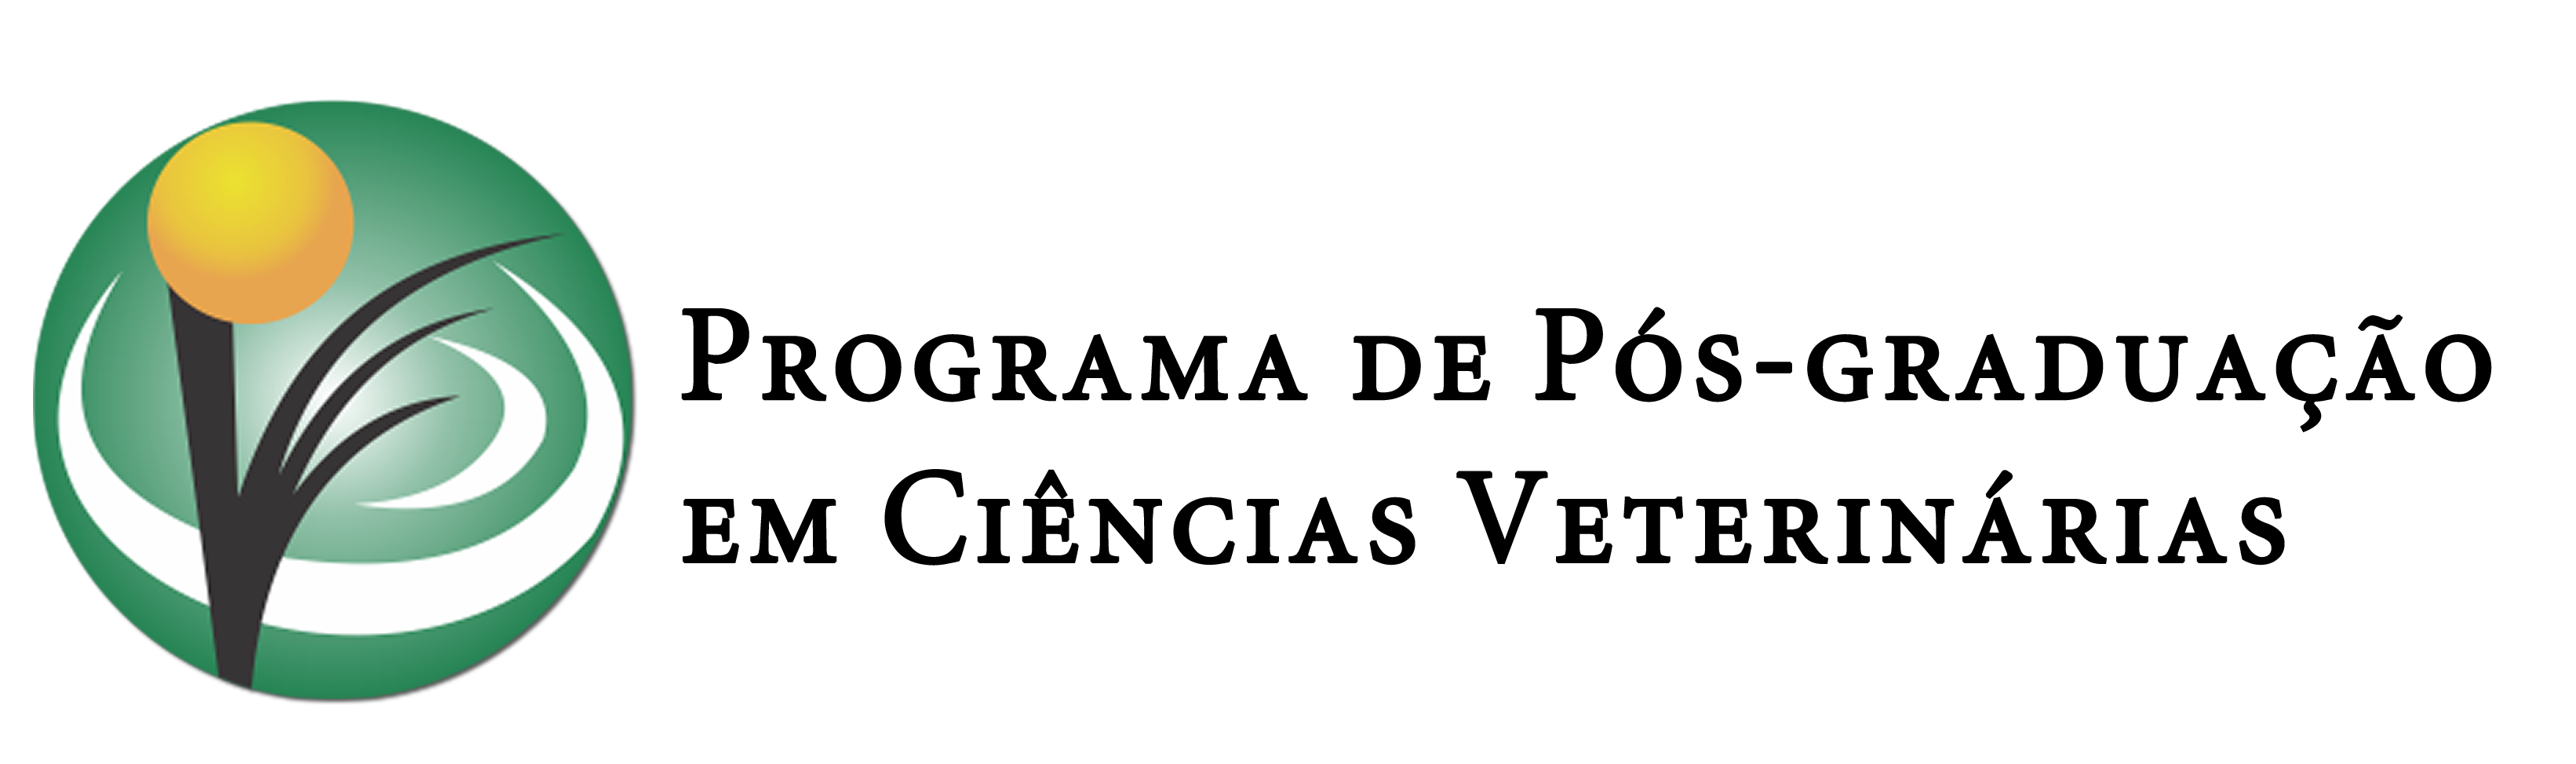 logo superior ppgcv escuro2